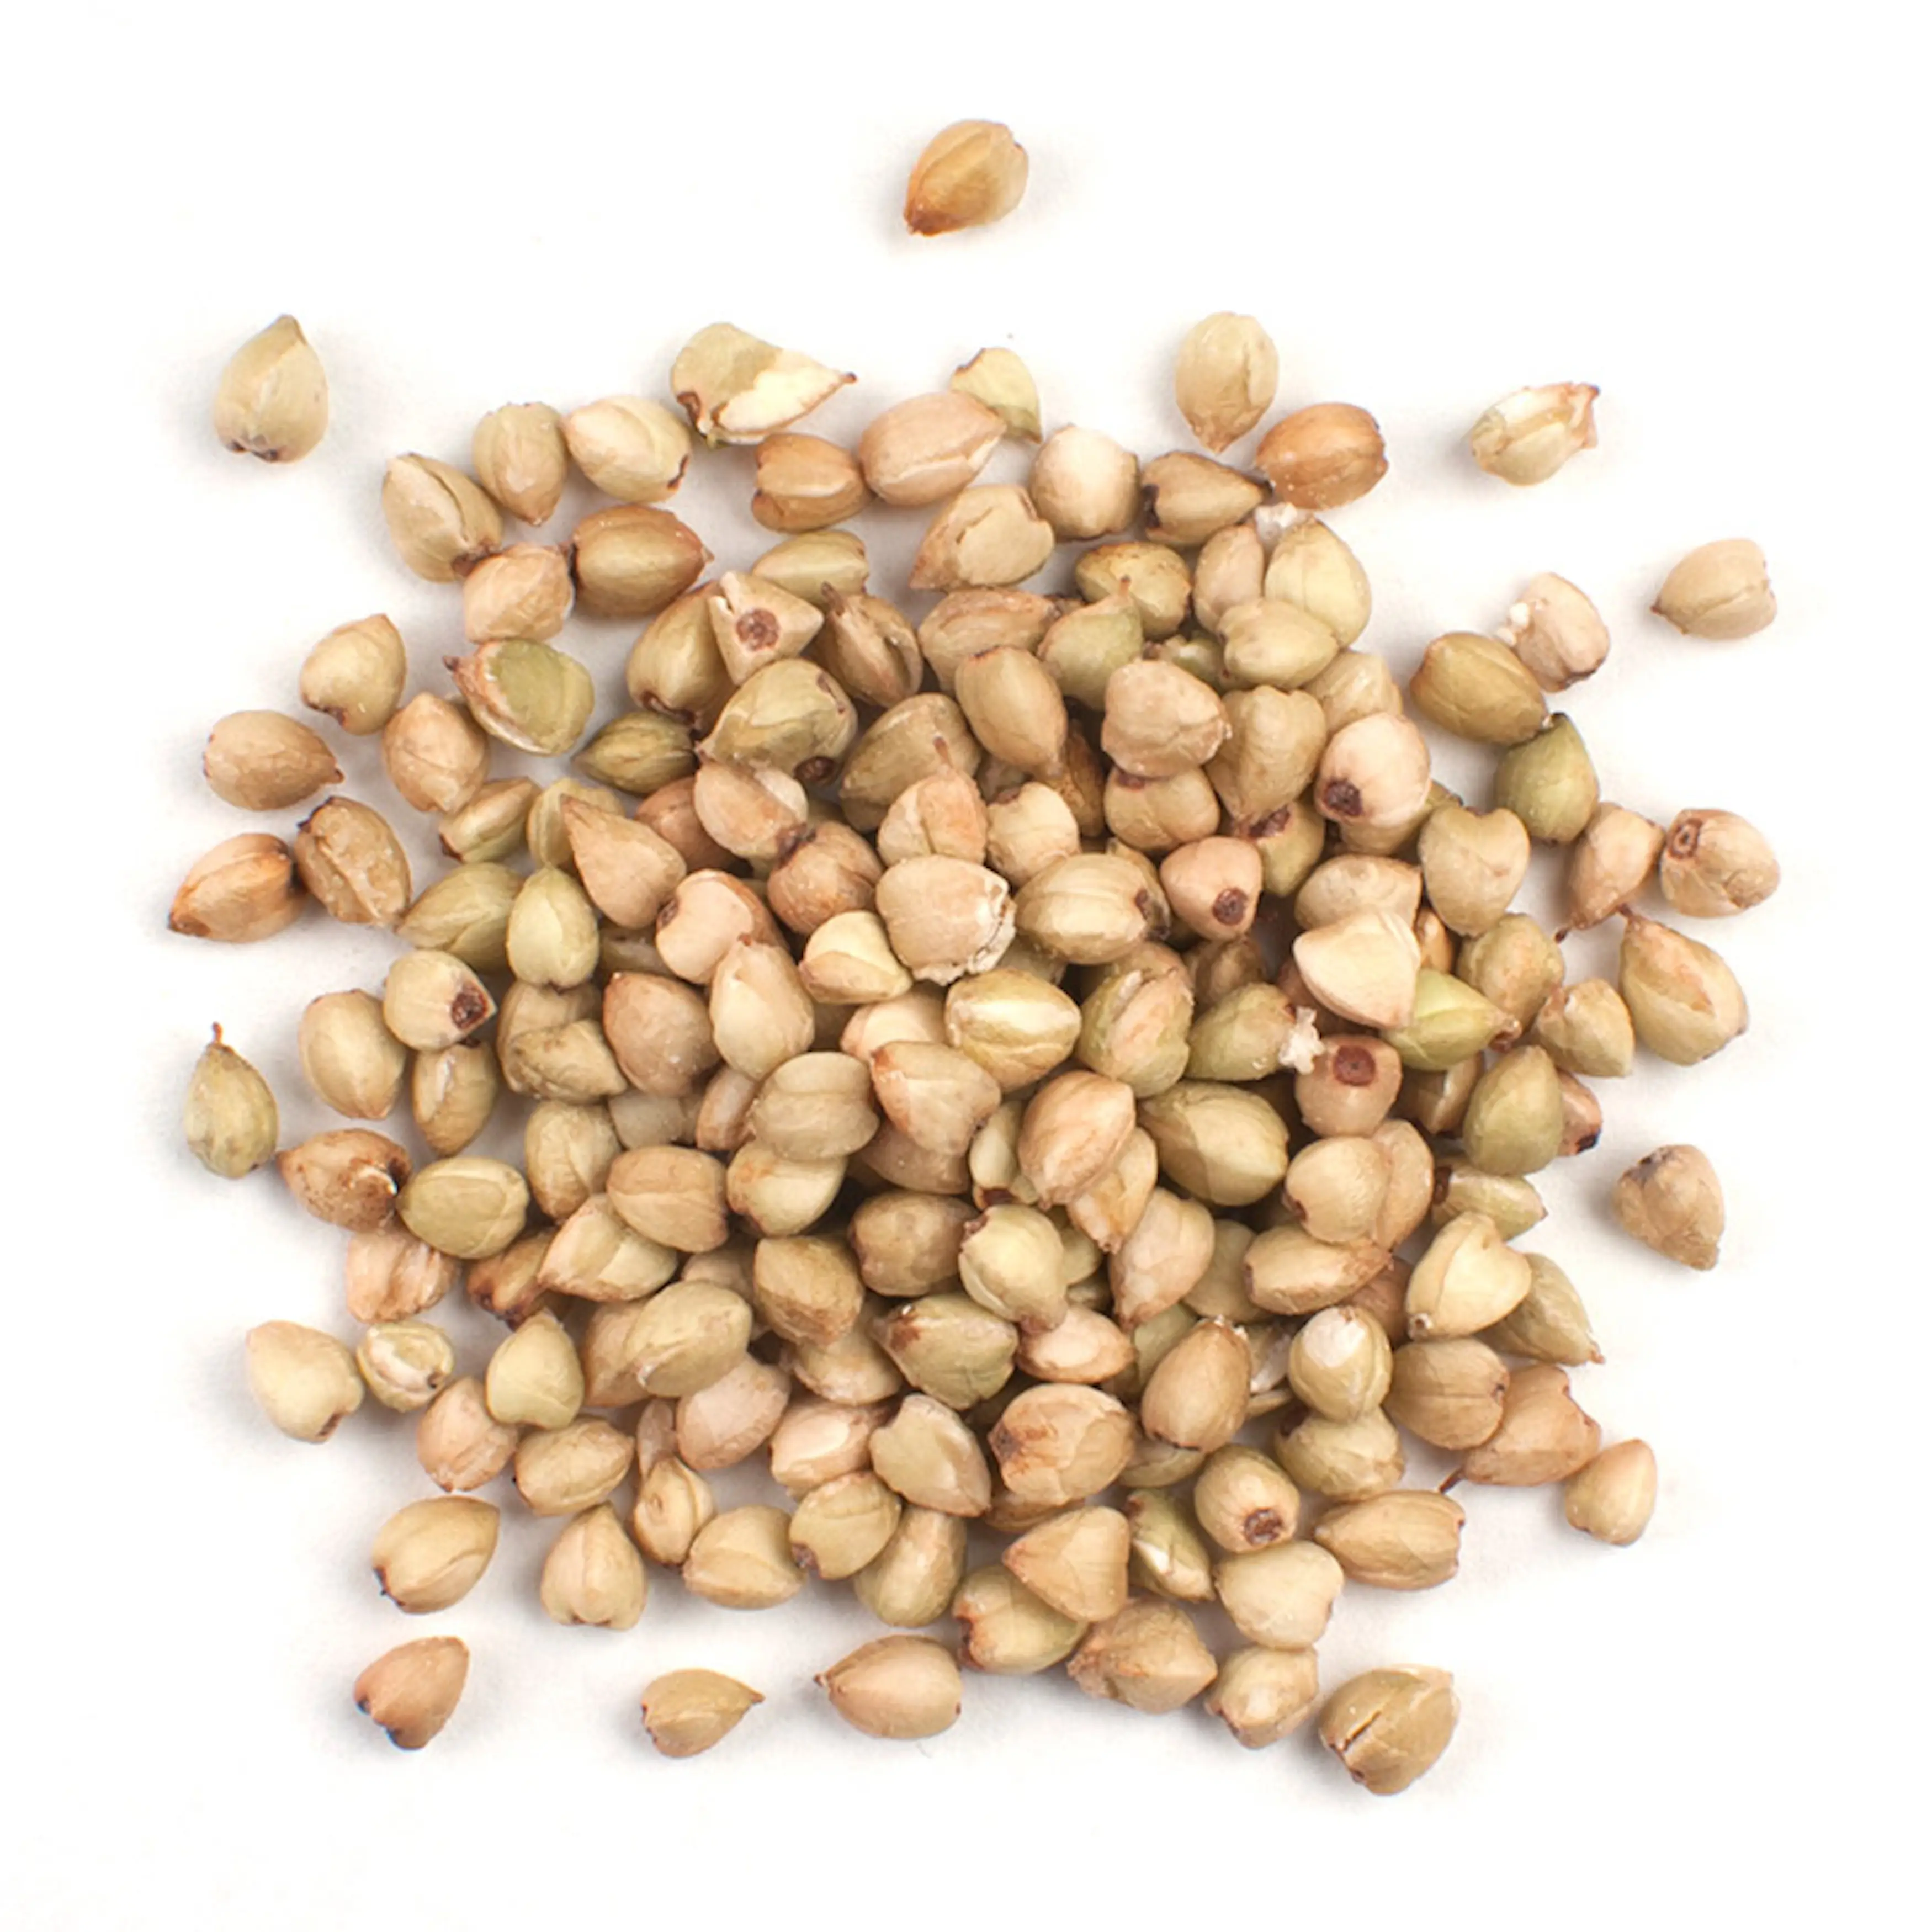 Wholesale buckwheat / Buckwheat grain / buckwheat seed